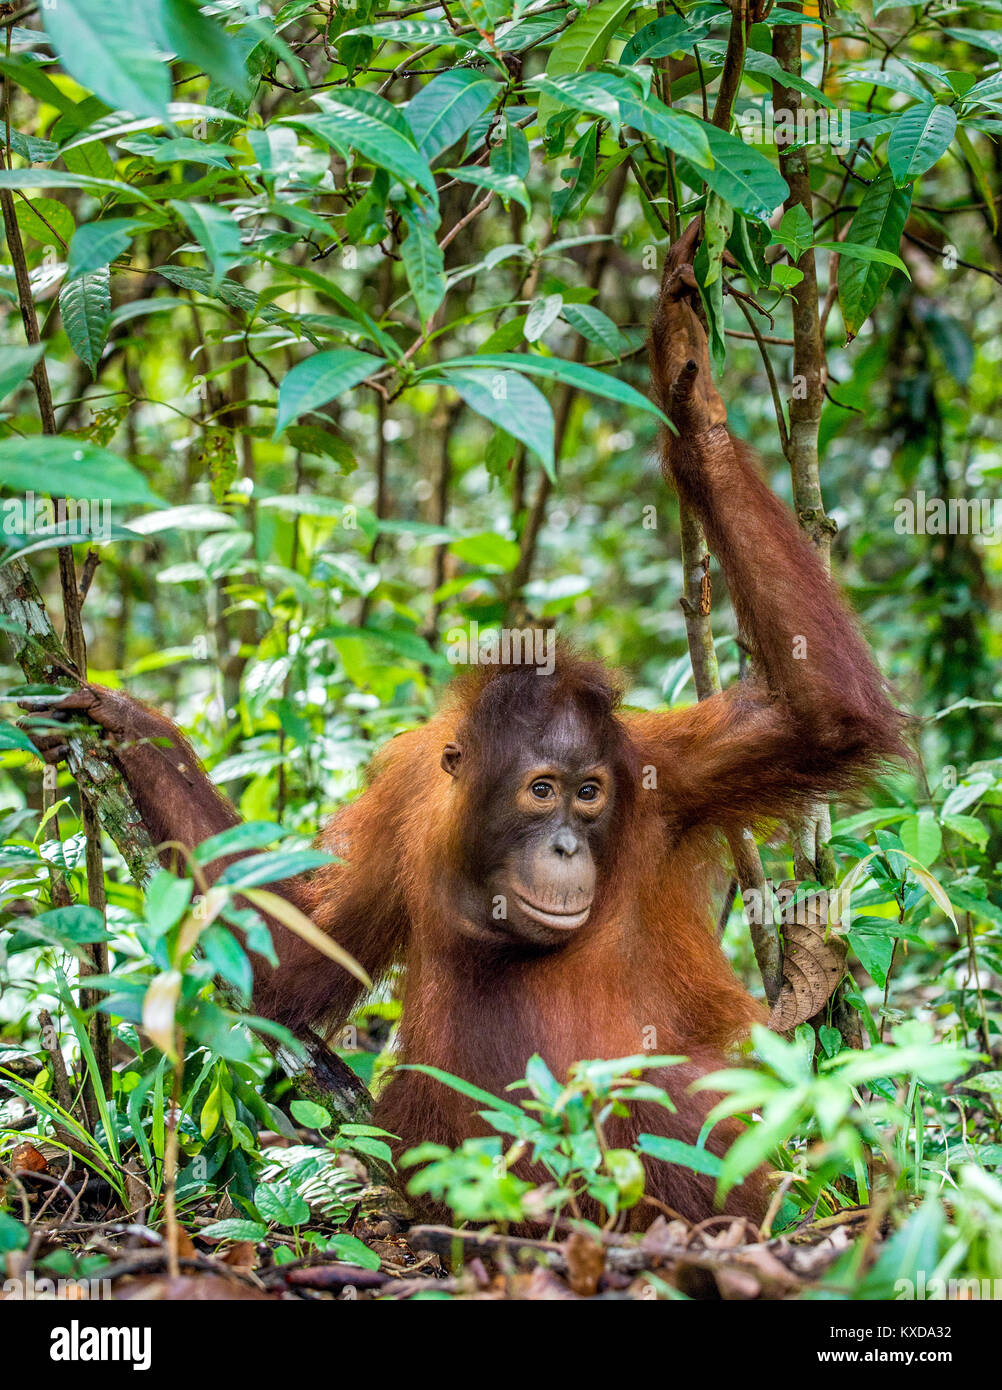 Kinder von Zentralen bornesischen Orang-utan (Pongo pygmaeus wurmbii) im natürlichen Lebensraum. Wilde Natur im tropischen Regenwald von Borneo. Indonesien Stockfoto